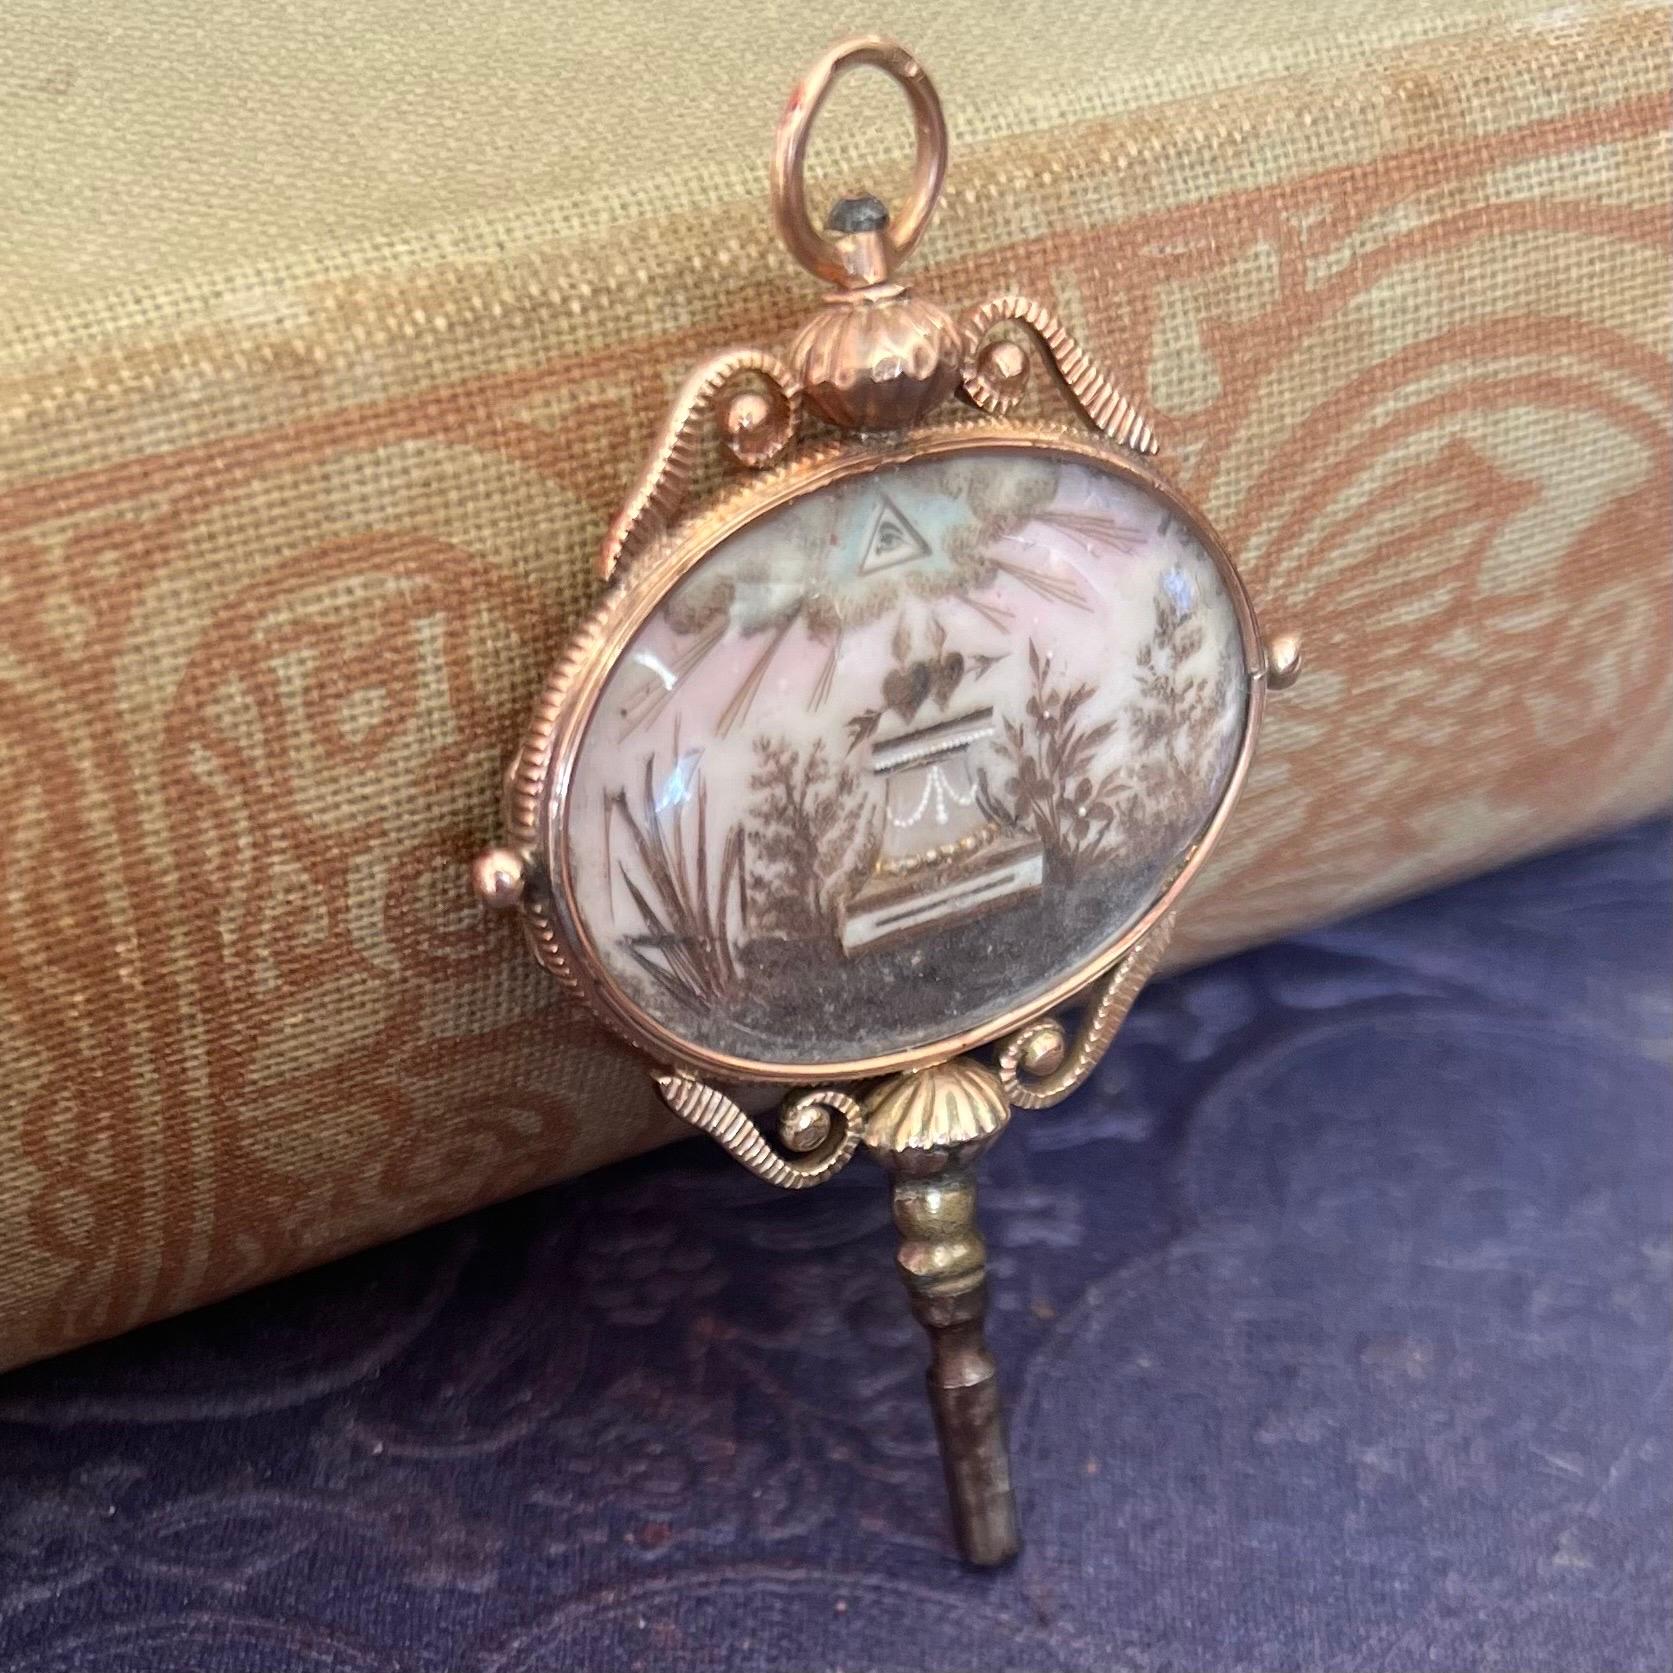 Exceptionnelle clé de montre de poche géorgienne ancienne, en or rose. La clé en or rose est décorée et entourée de figures creuses et enroulées détaillées sur sa bordure qui présente de délicates gravures décoratives des deux côtés. Pour la